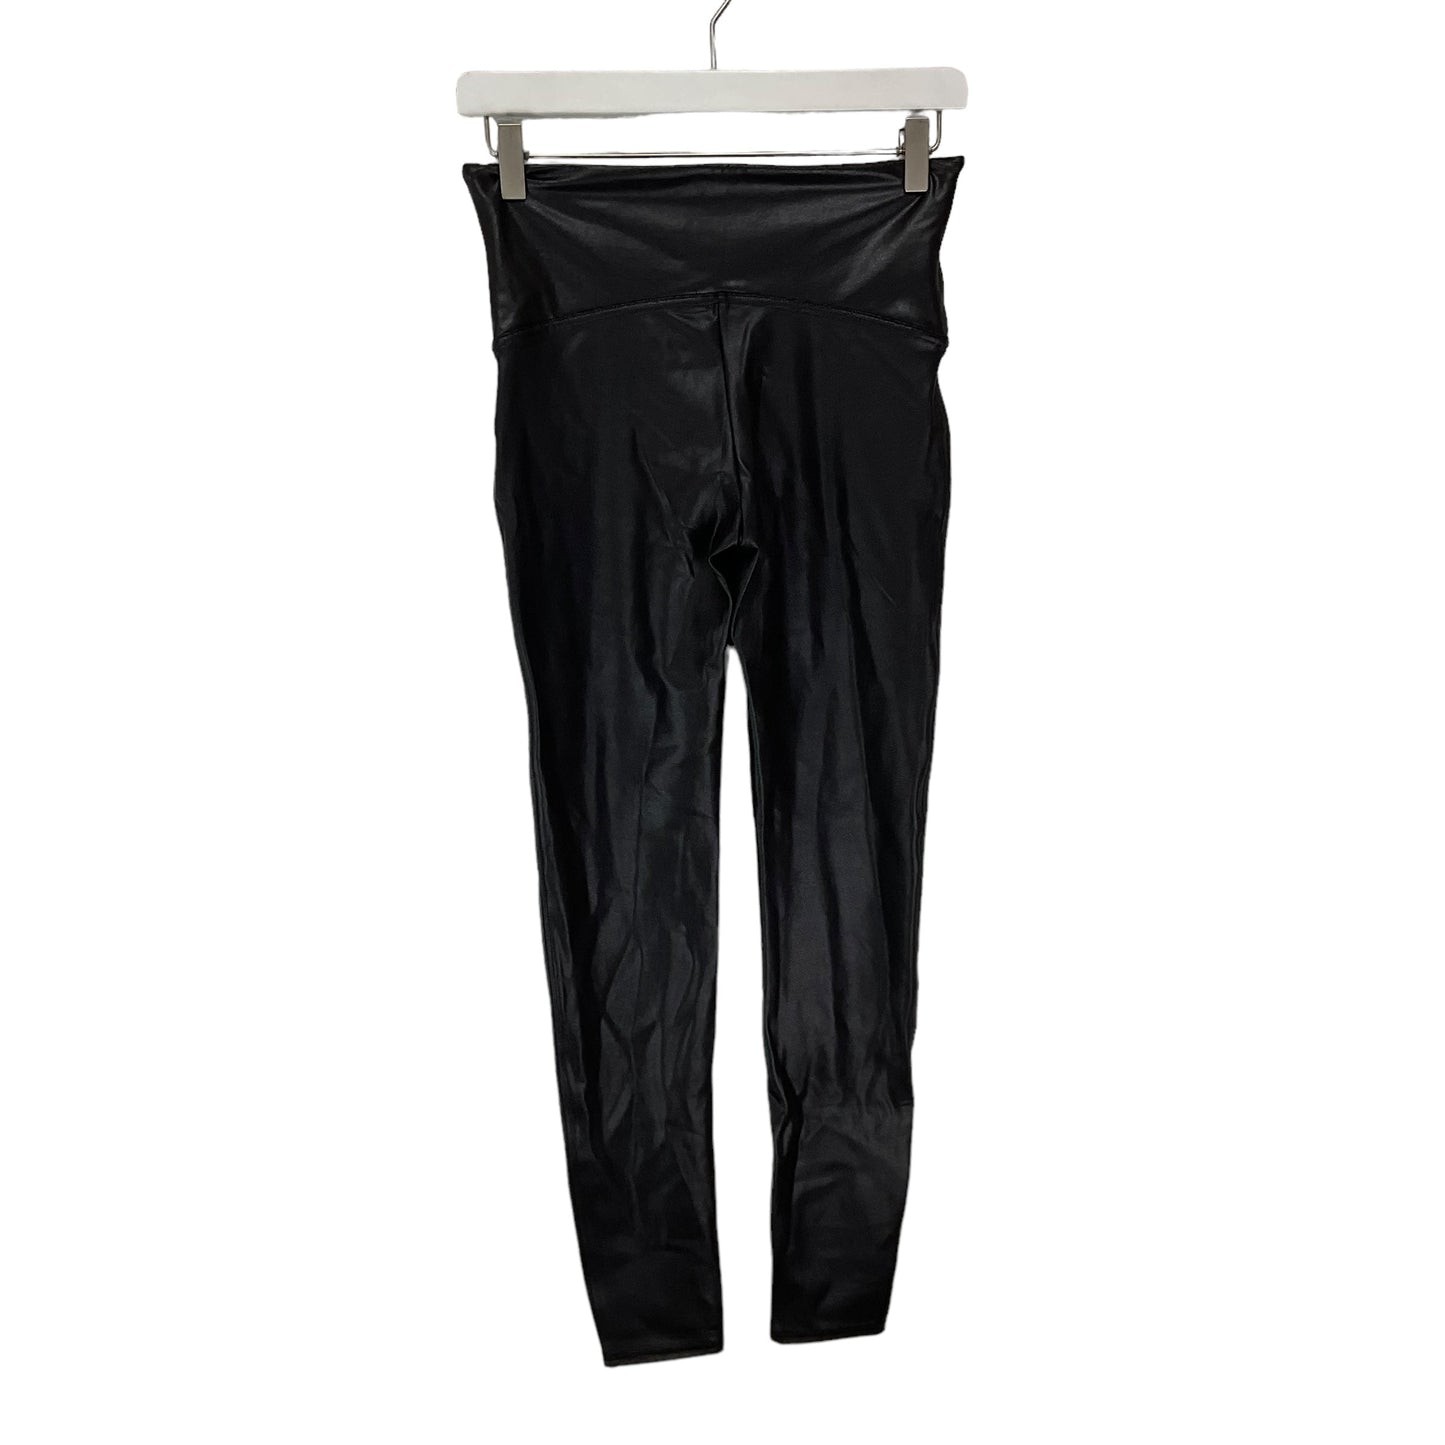 Black Pants Leggings Spanx, Size L